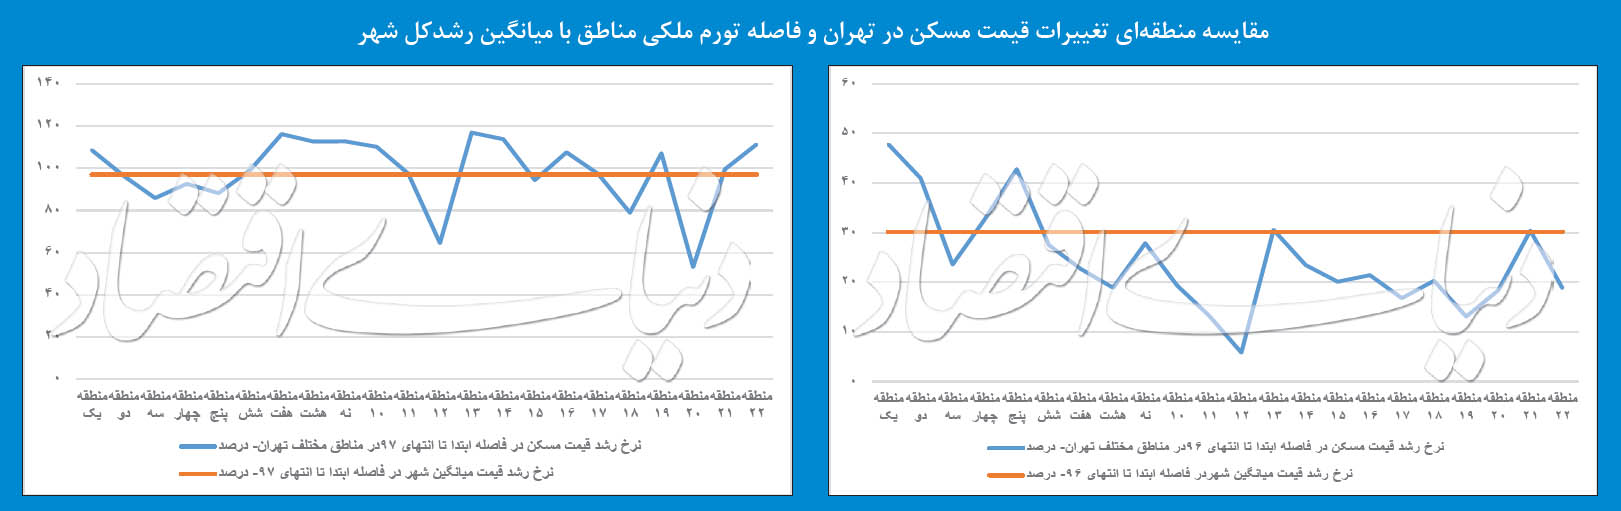 رشد قیمت مسکن در تهران در سال ۹۶